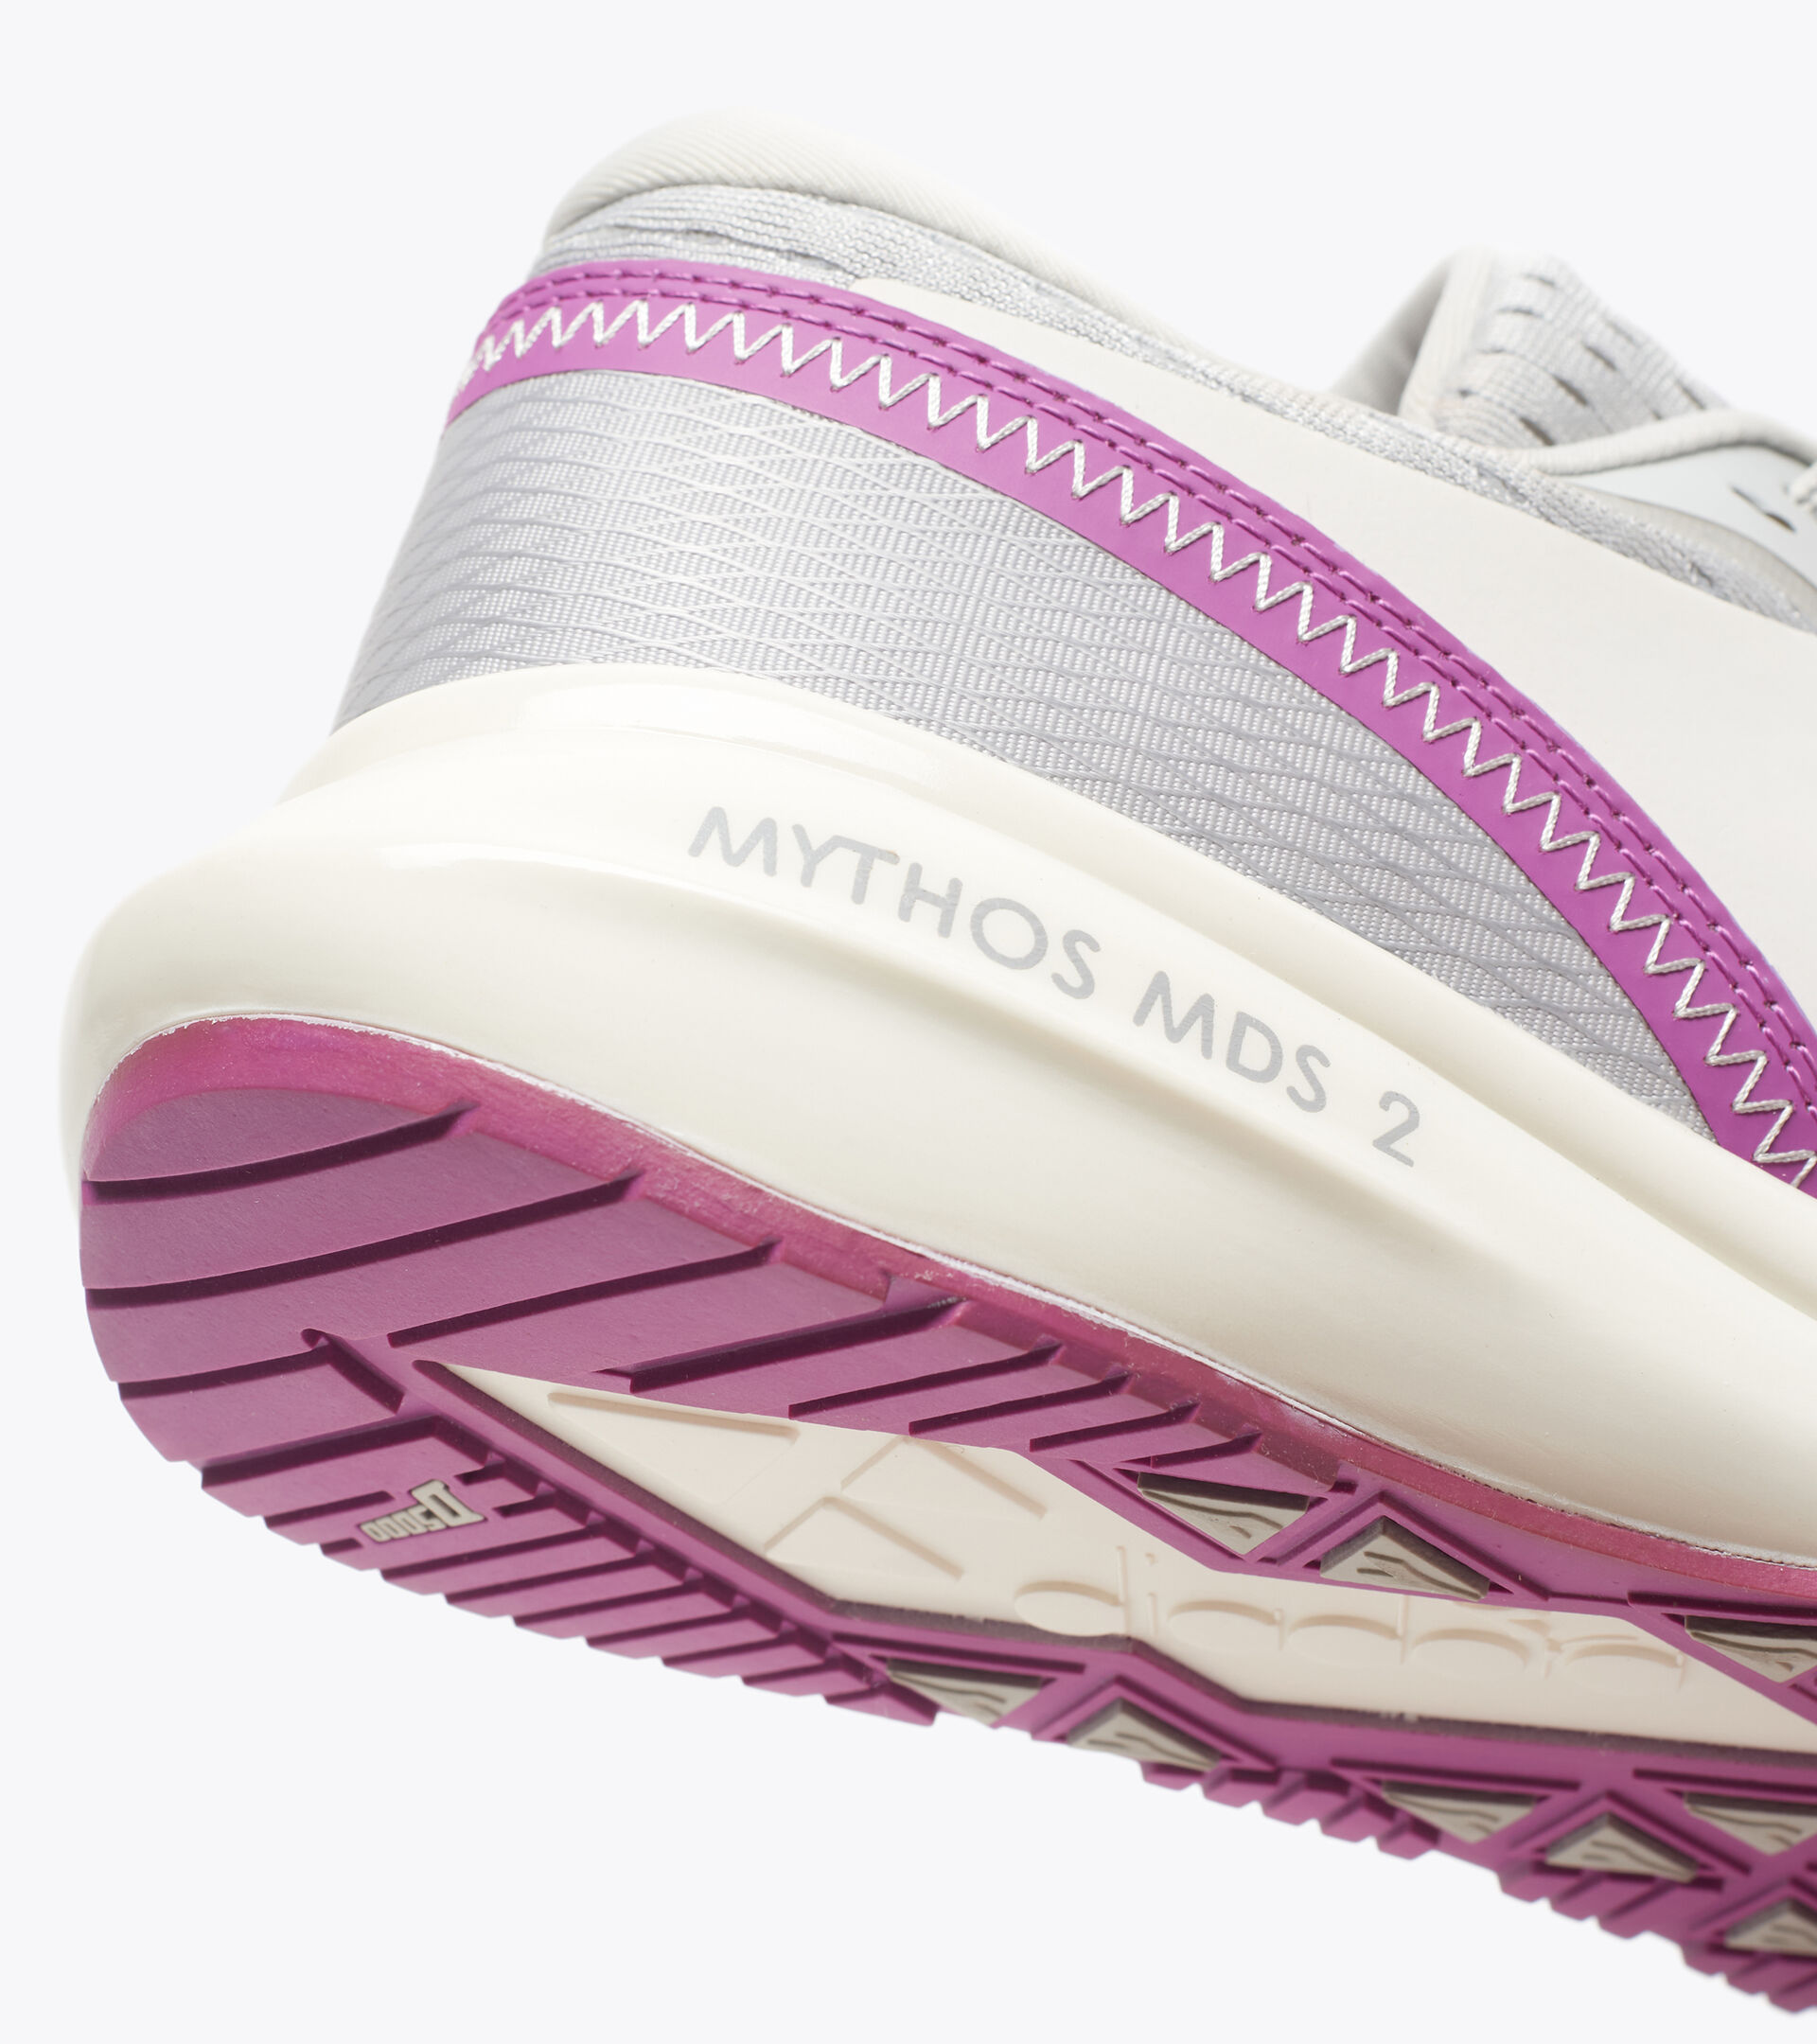 Running shoe - Women MYTHOS MDS 2 W SILVER DD/WHITE - Diadora